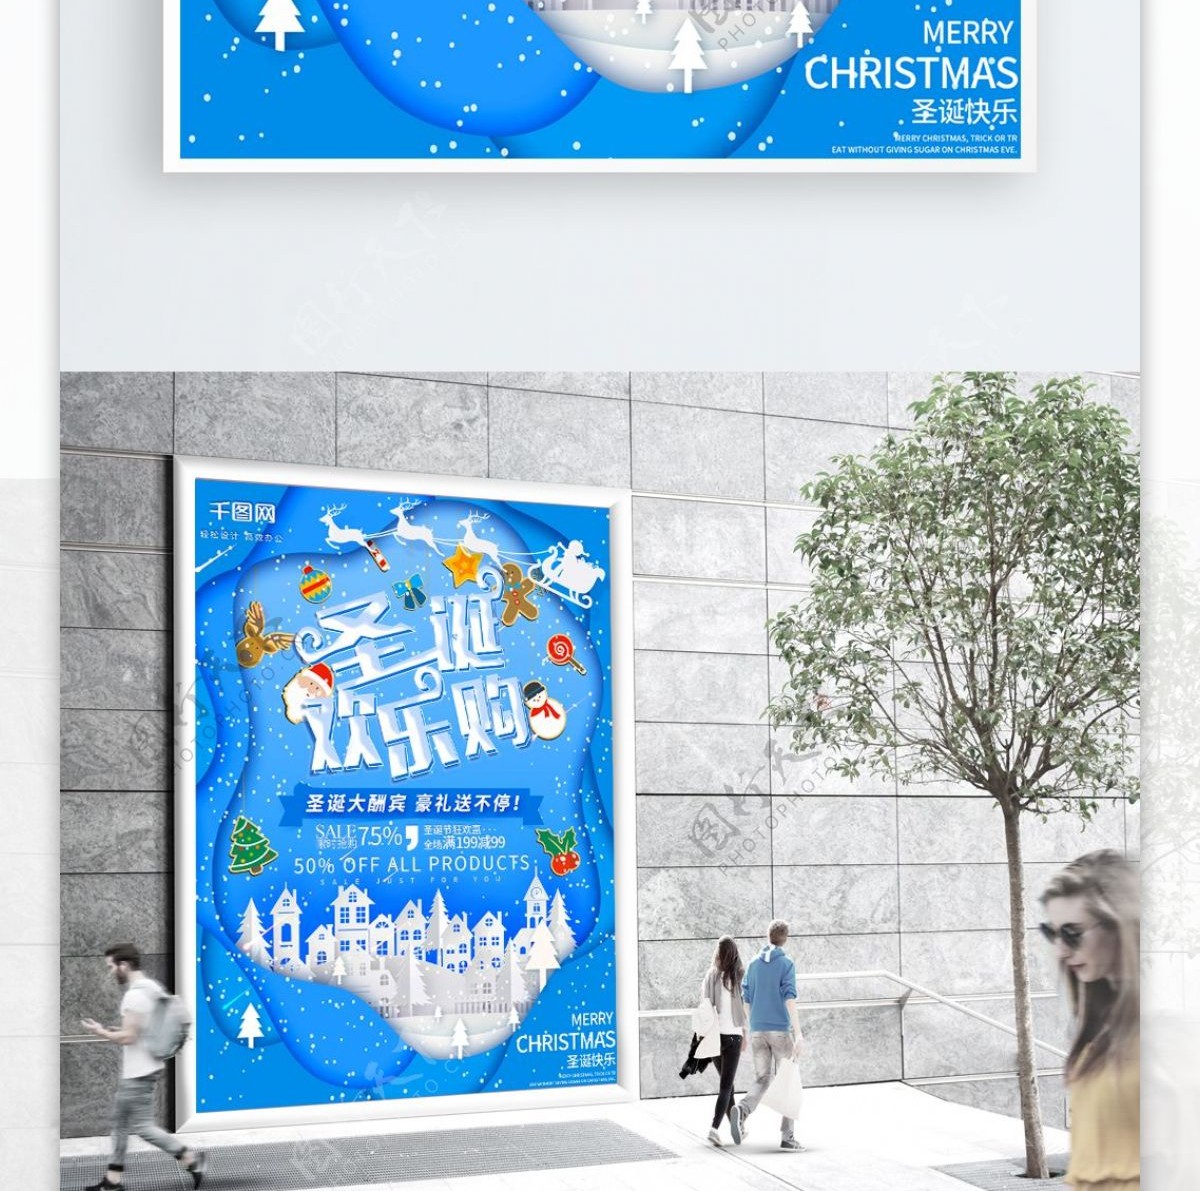 可商用蓝色纸片微立体圣诞节商场促销海报